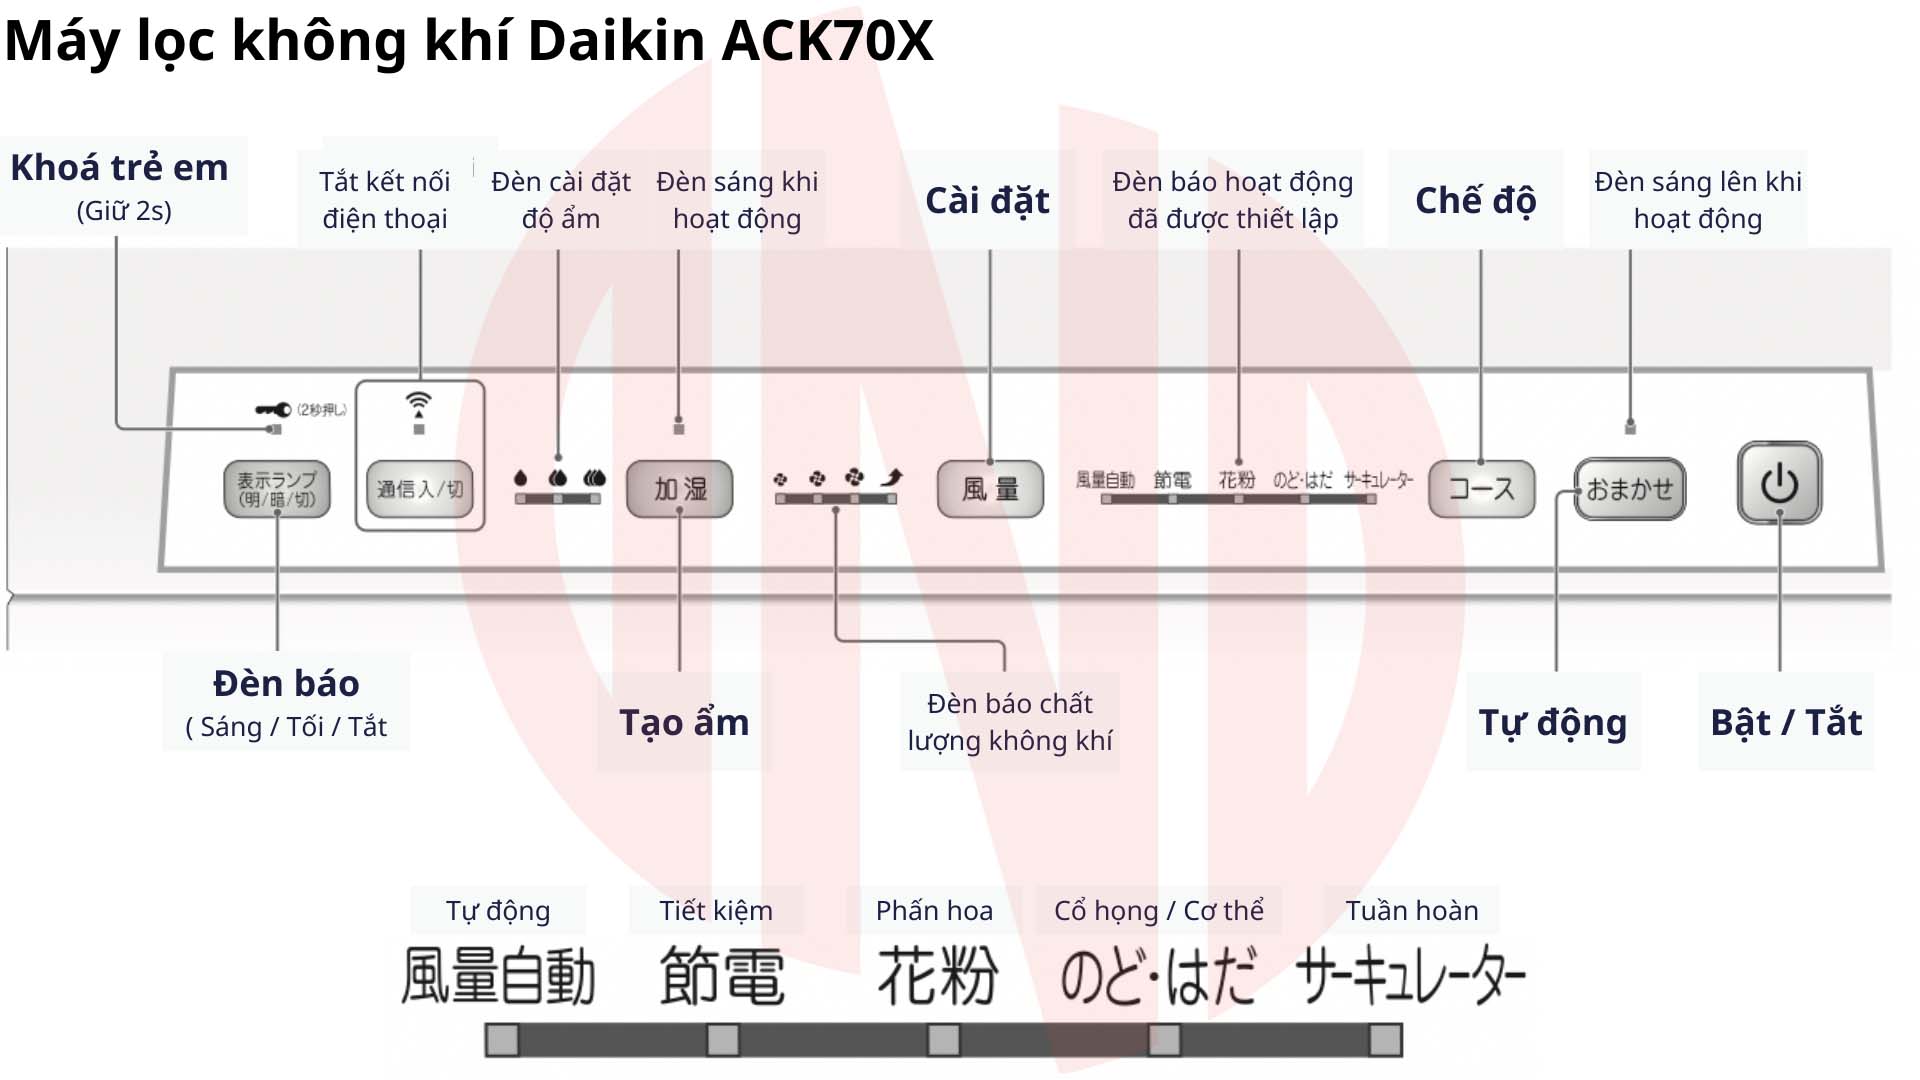 Hướng dẫn sử dụng máy lọc không khí Daikin ACK70X